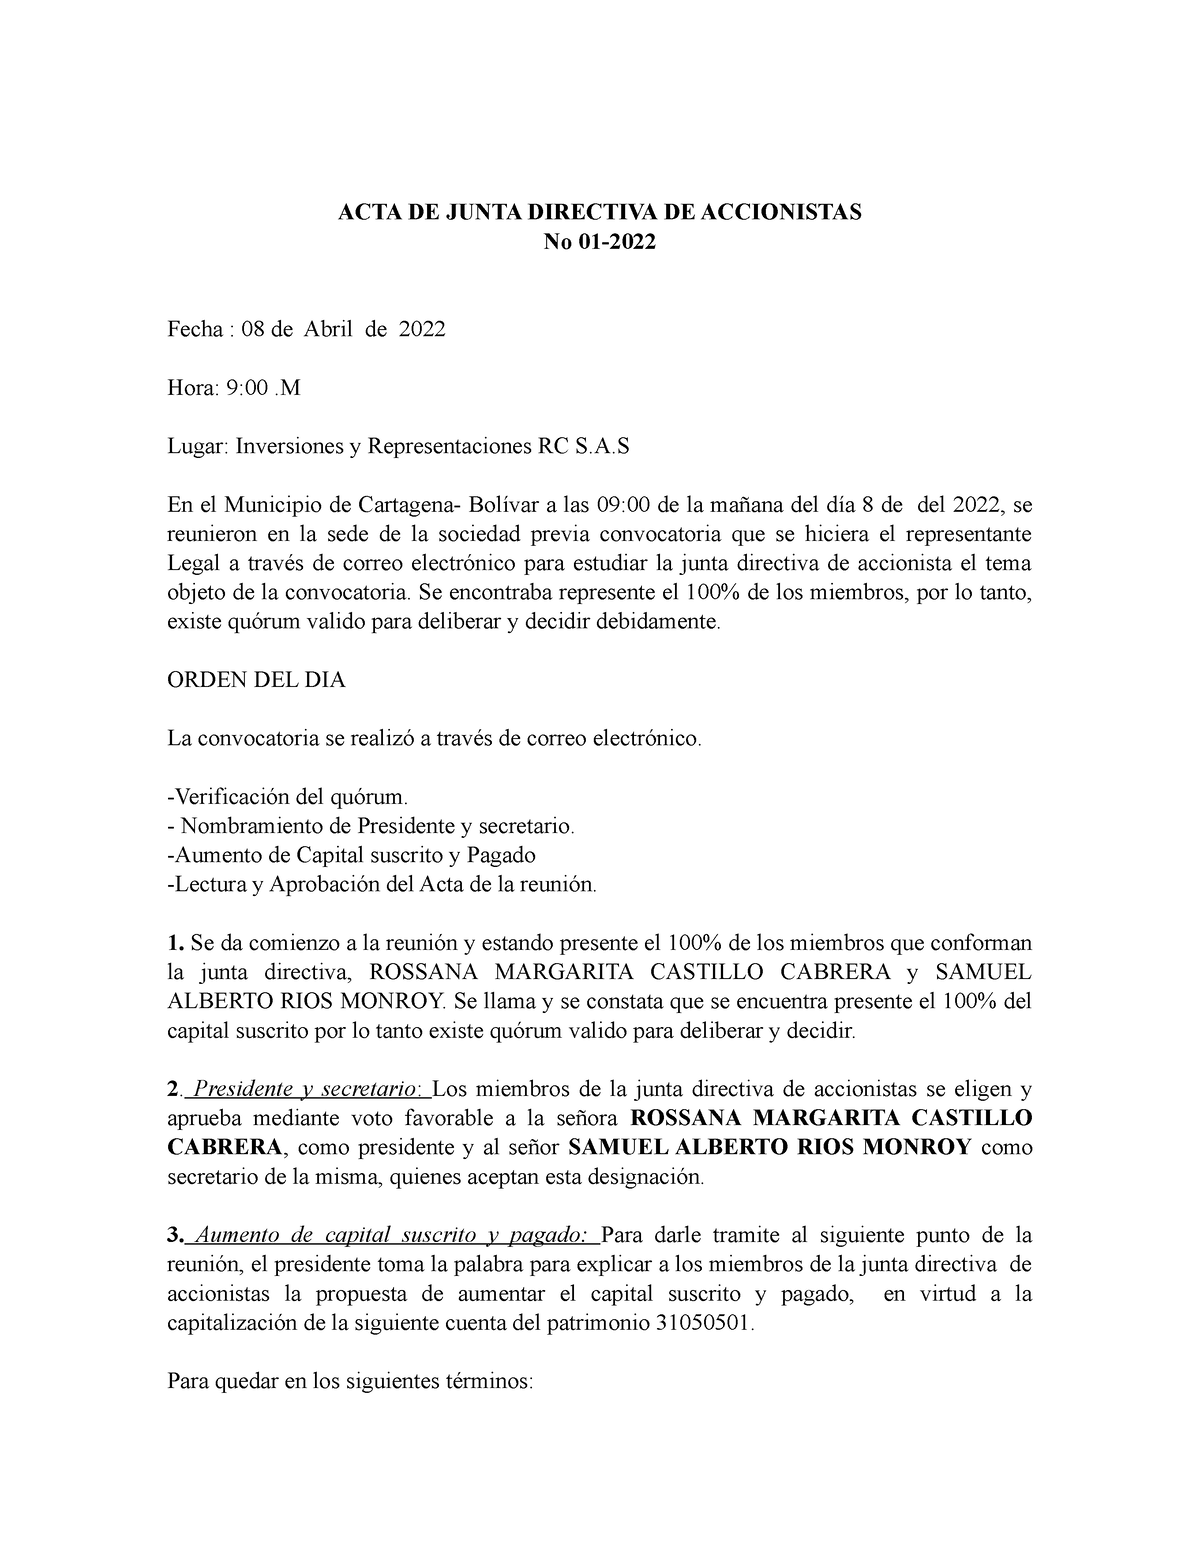 ACTA Aumento Capital - ACTA DE JUNTA DIRECTIVA DE ACCIONISTAS No 01- Fecha  : 08 de Abril de 2022 - Studocu